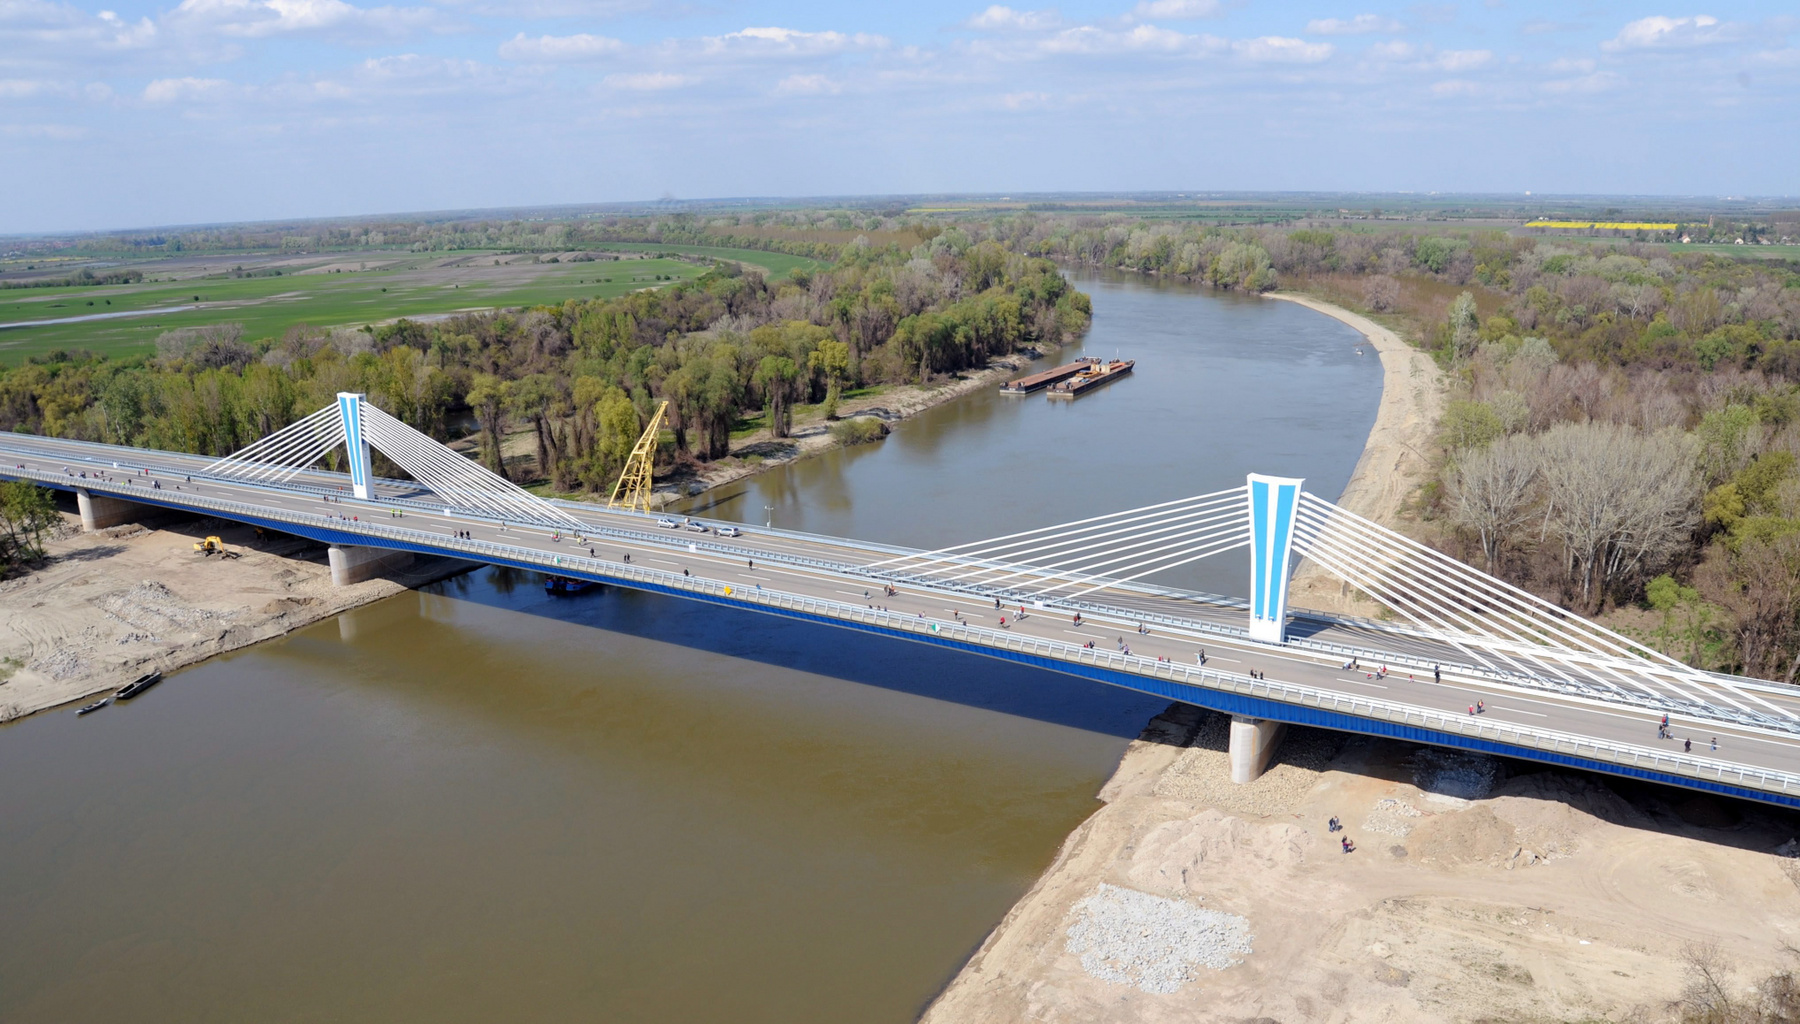 Az új komáromi Duna-híd (Monostori híd). Átadás éve: 2020